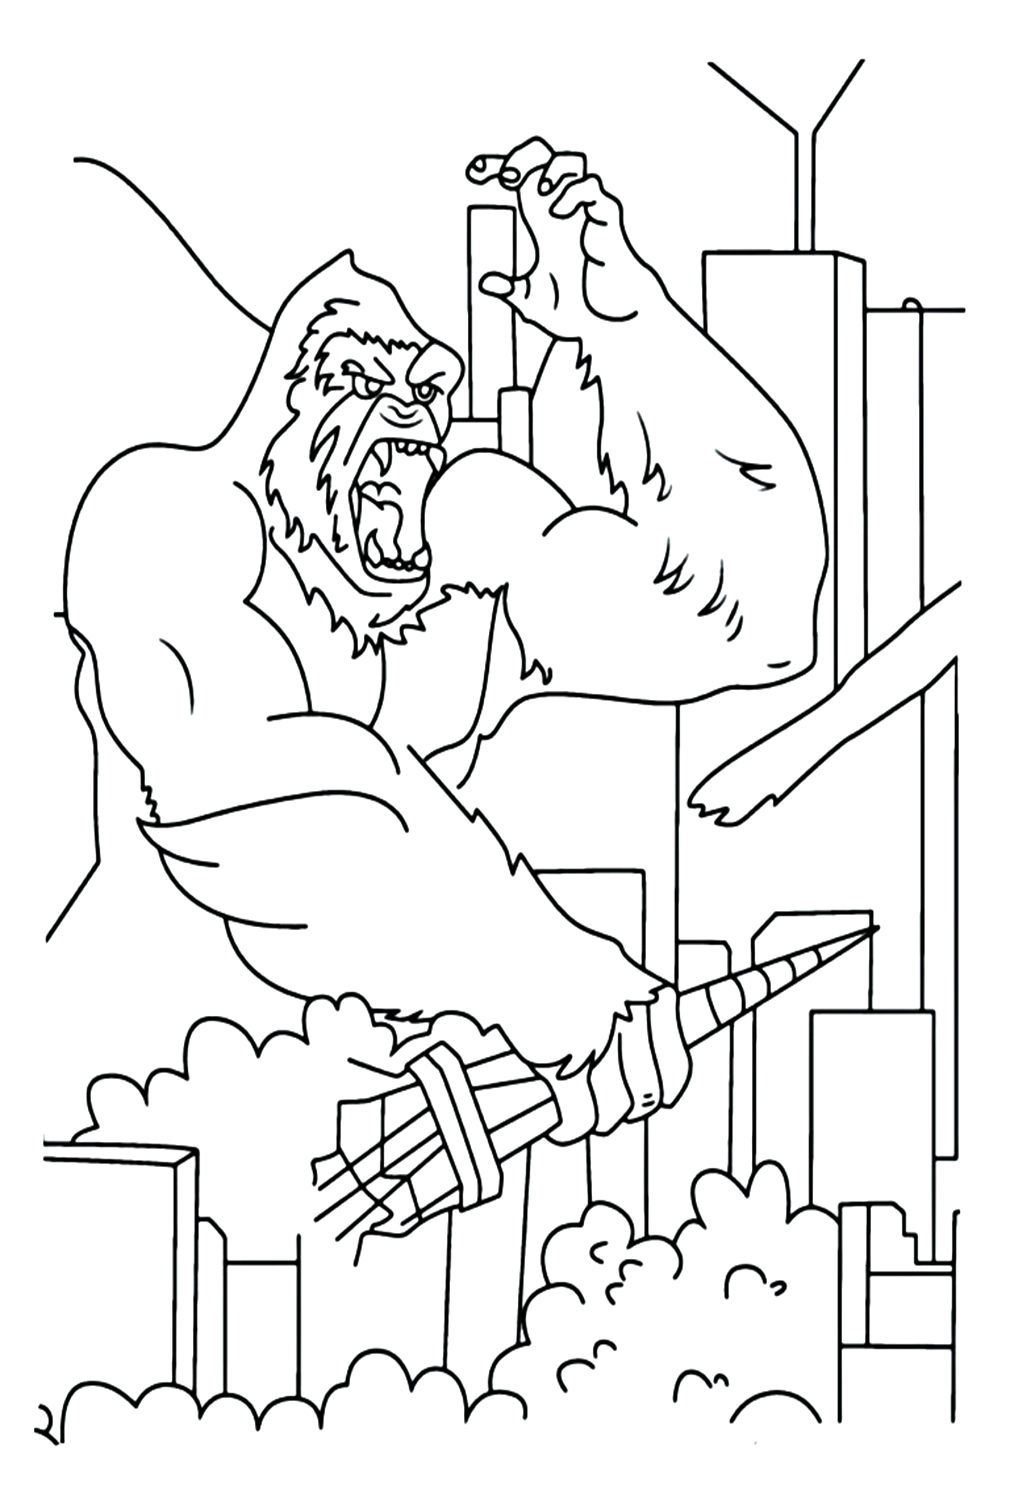 Dibujos para colorear de King Kong para imprimir gratis de King Kong